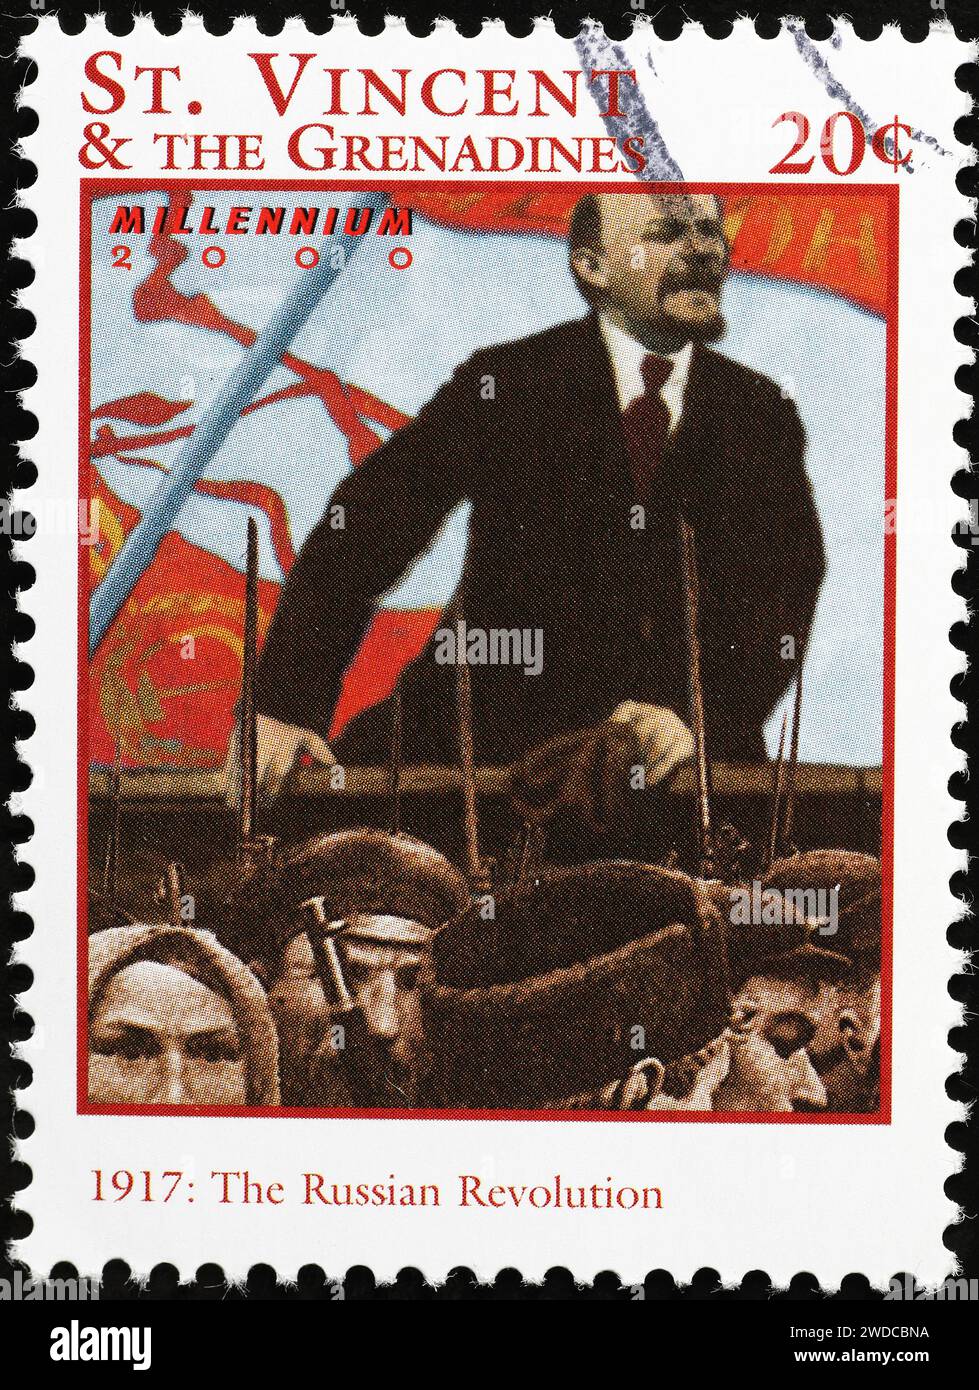 Révolution russe de 1917 rappelée sur le timbre Banque D'Images